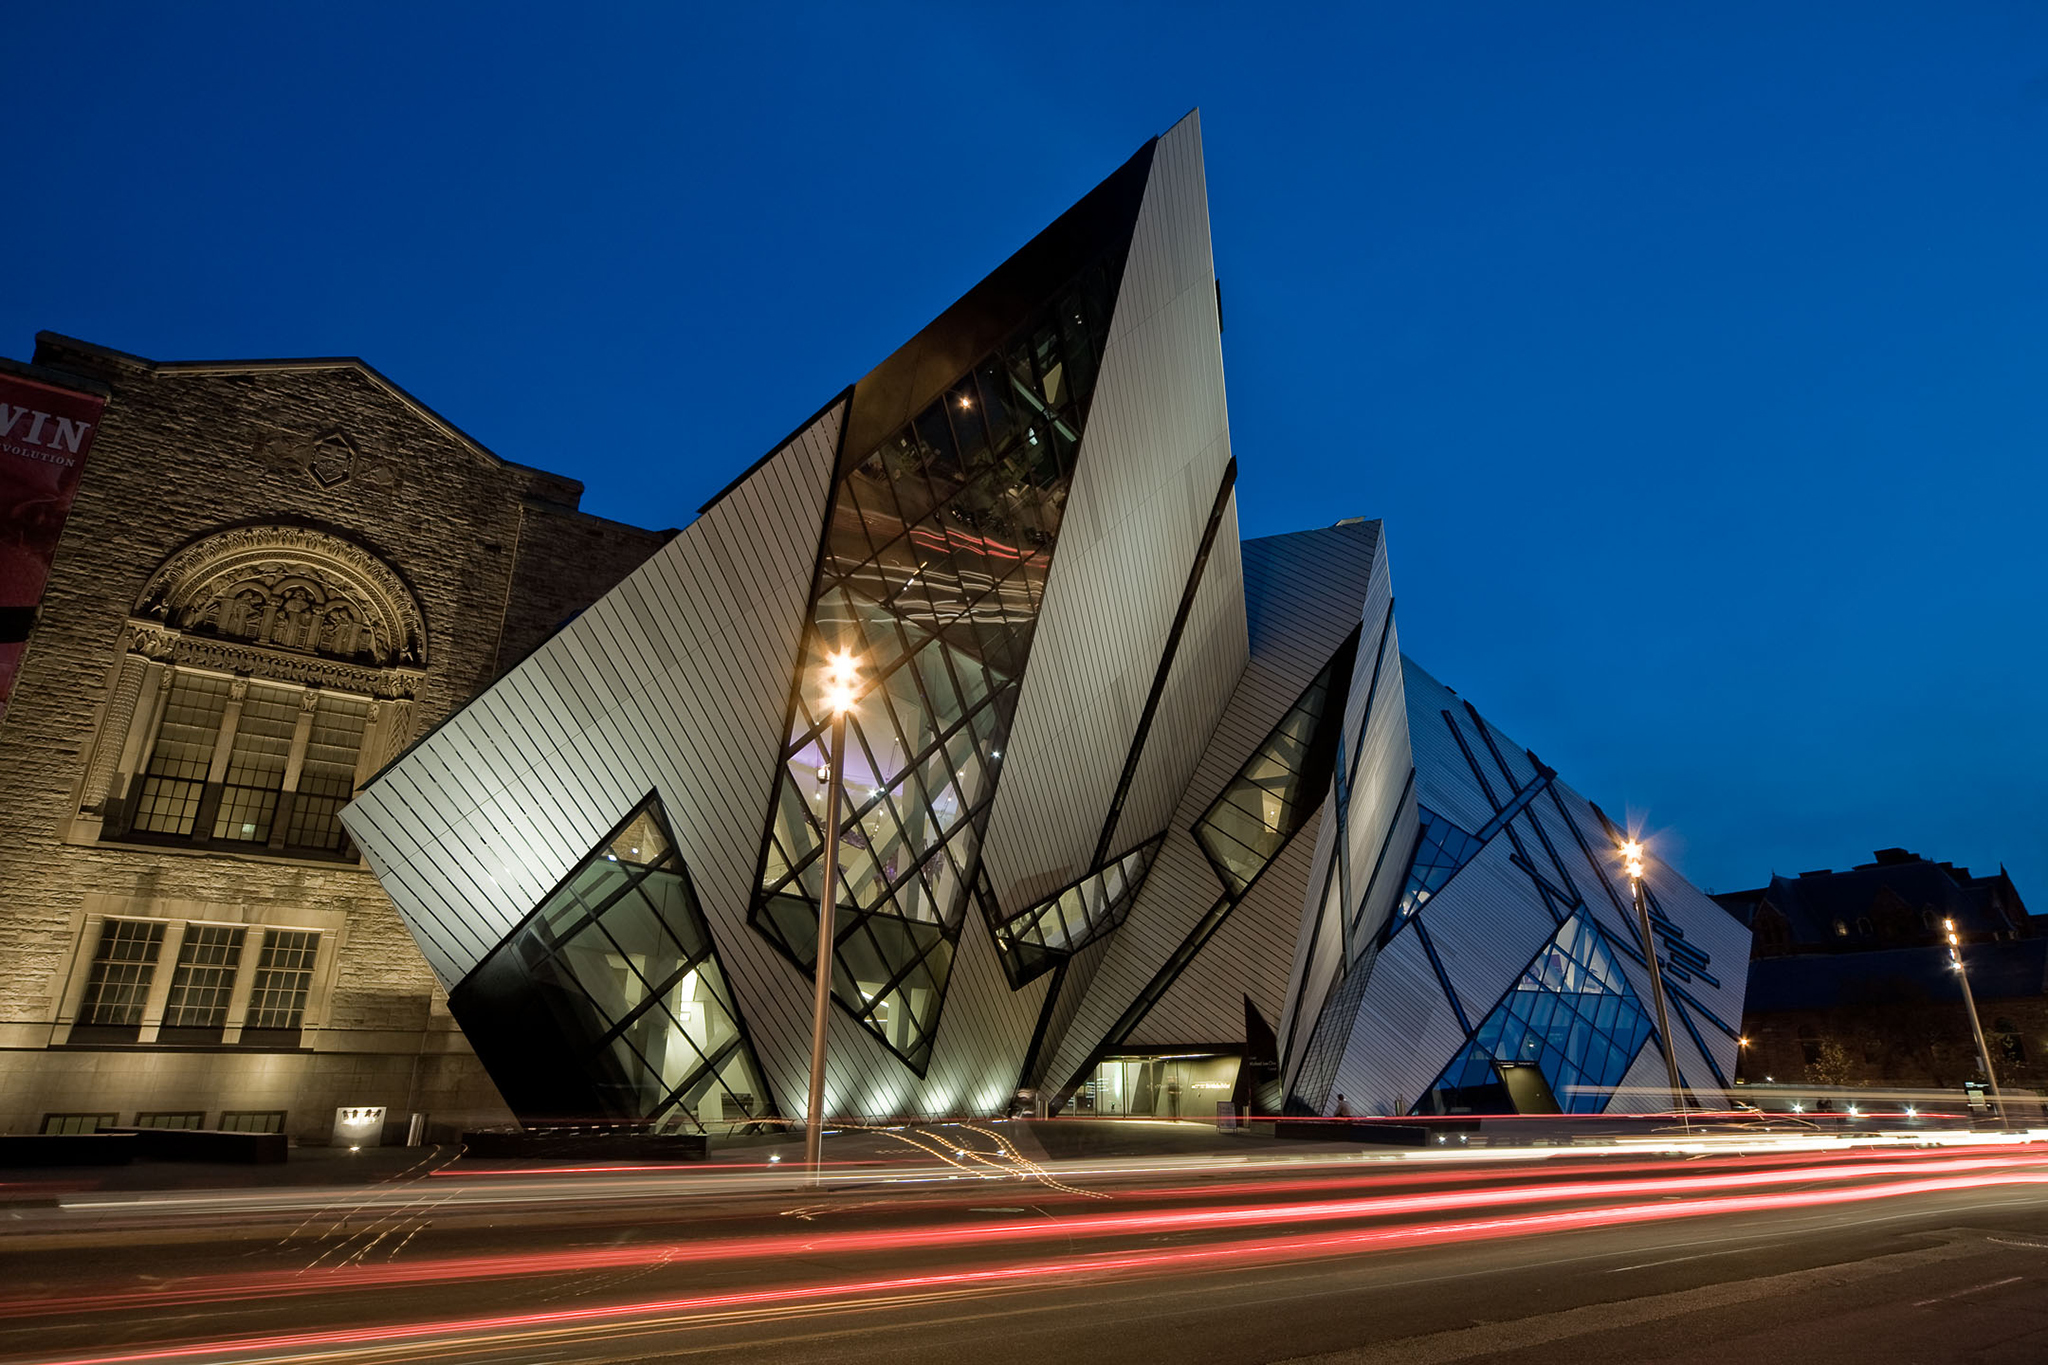 Royal Ontario Museum Image